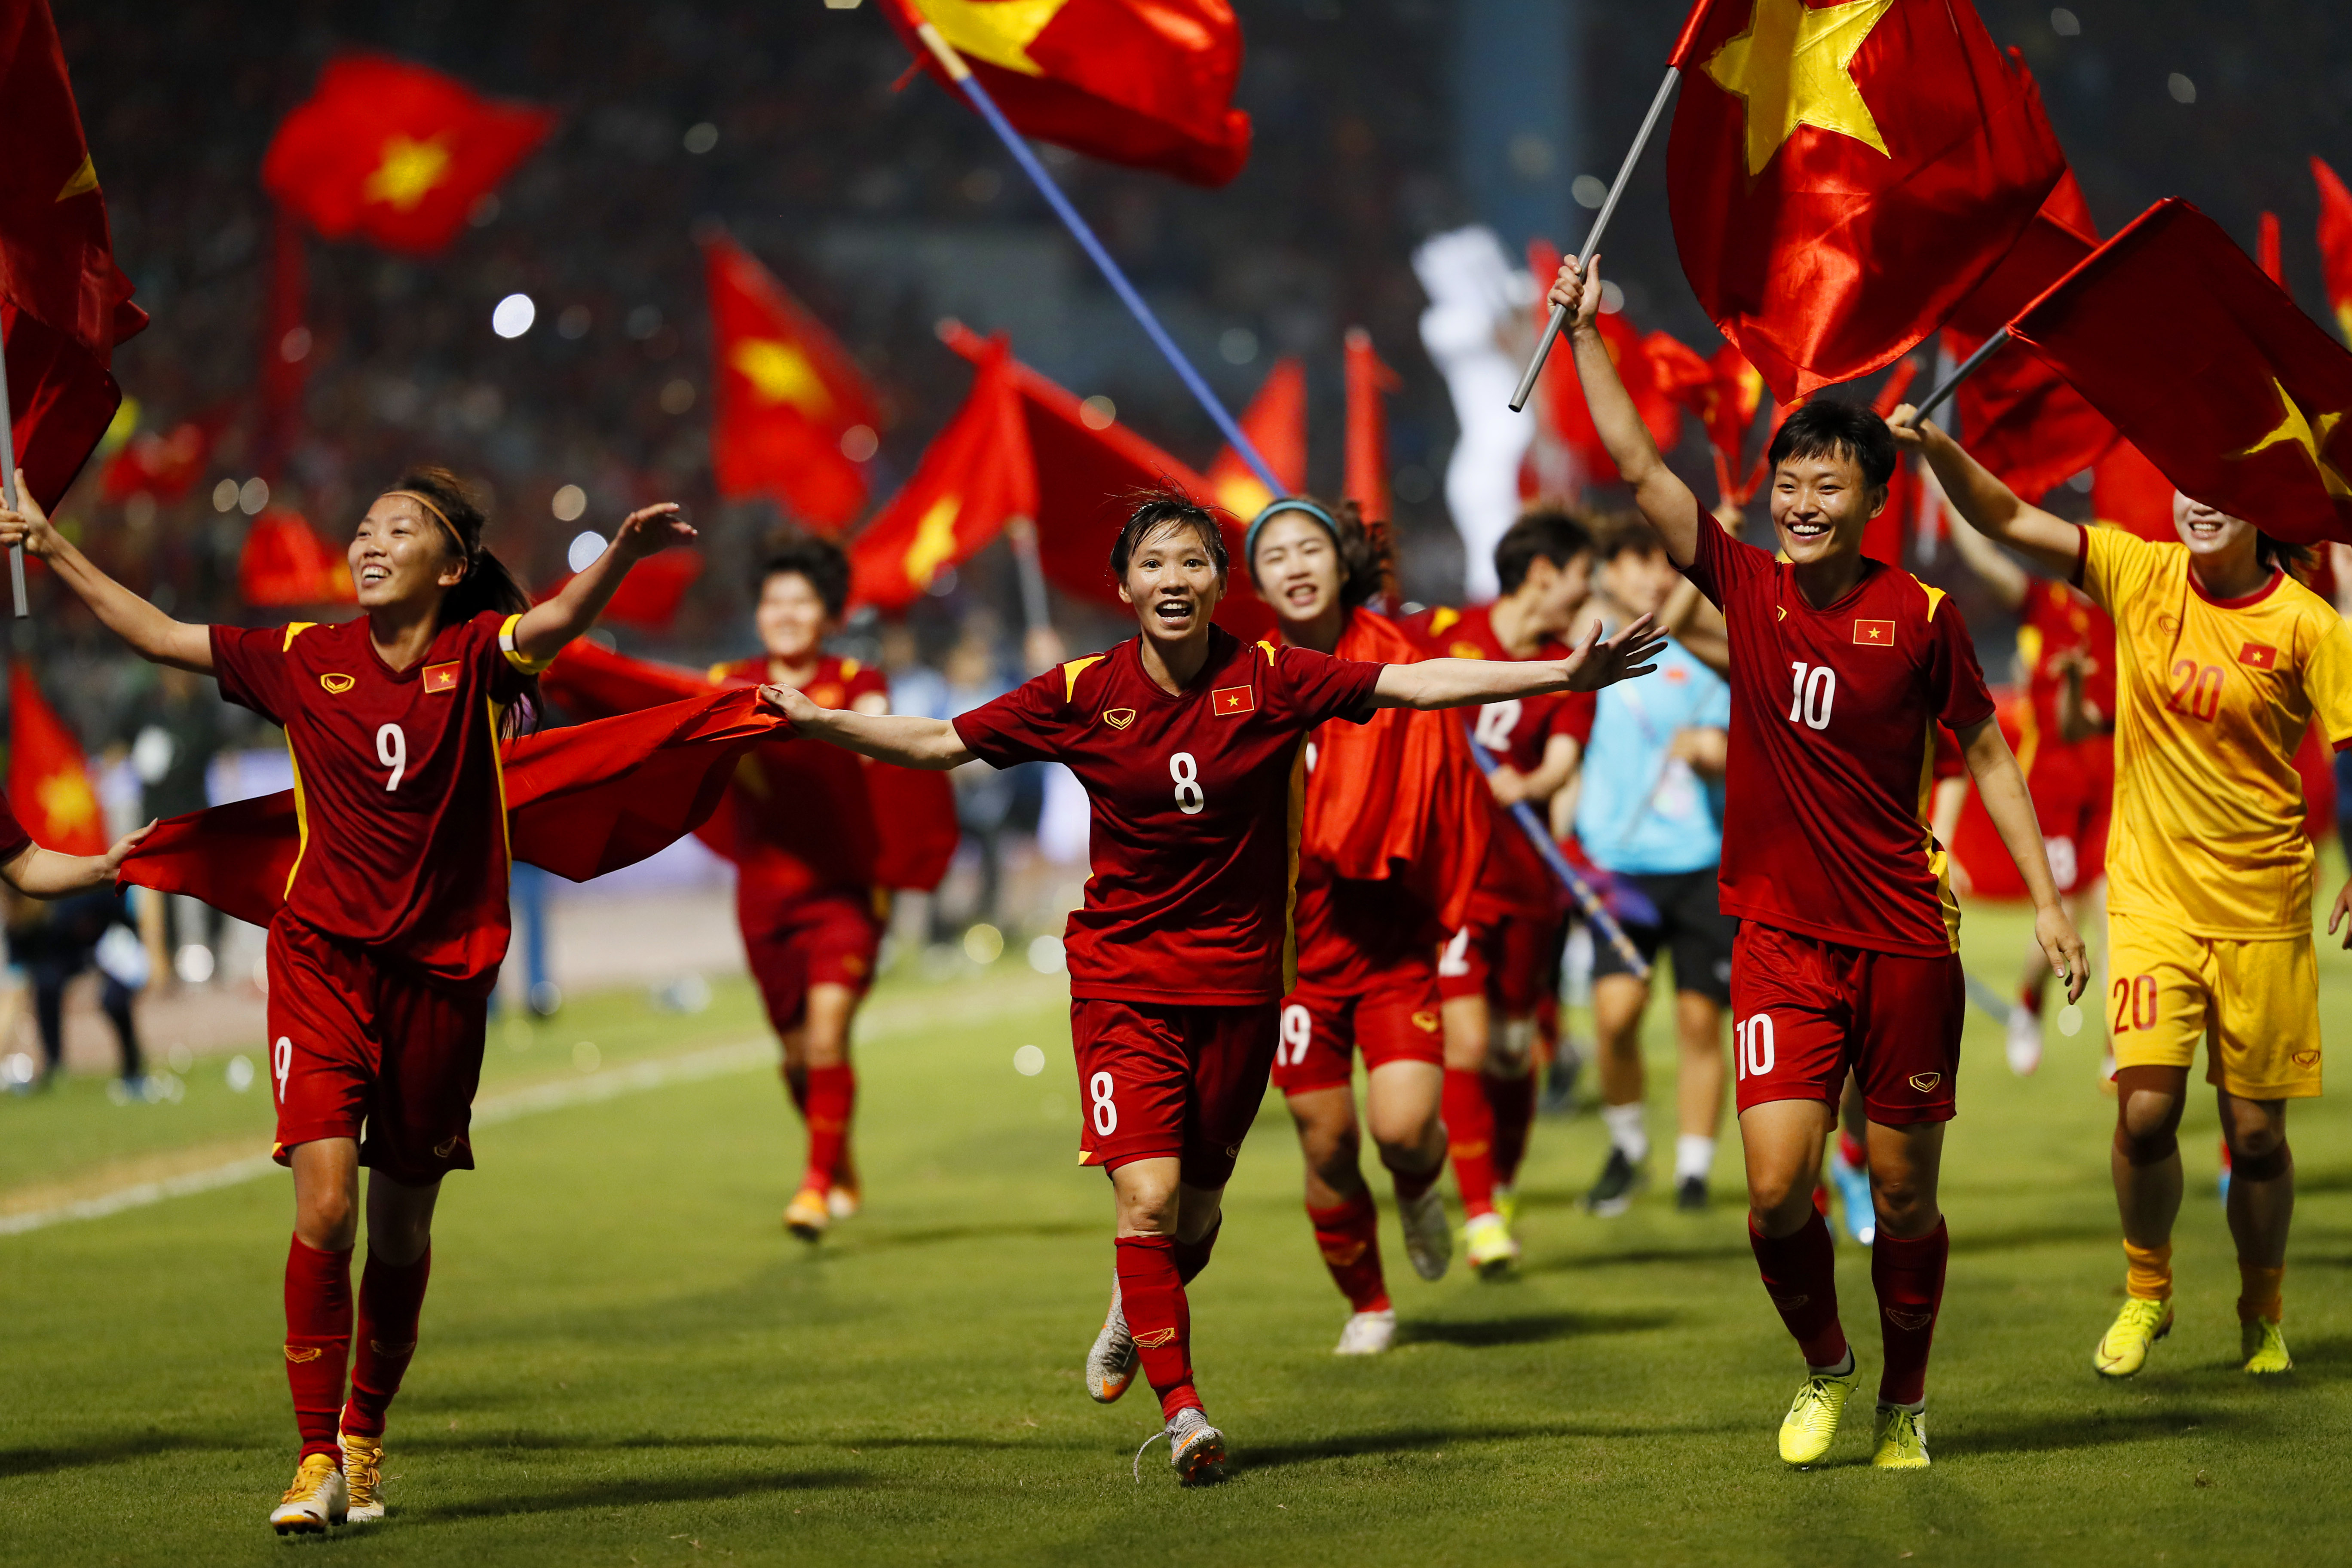 Tuyển nữ Việt Nam: Các cô gái đặc biệt này đang mang đến niềm vui và lòng tự hào cho đất nước. Những cú sút, pha chuyền bóng lung linh từ đội tuyển nữ Việt Nam đang chinh phục mọi tình huống khó khăn trên sân đấu. Hãy cùng xem họ chinh phục những thử thách và tỏa sáng trên sân cỏ.